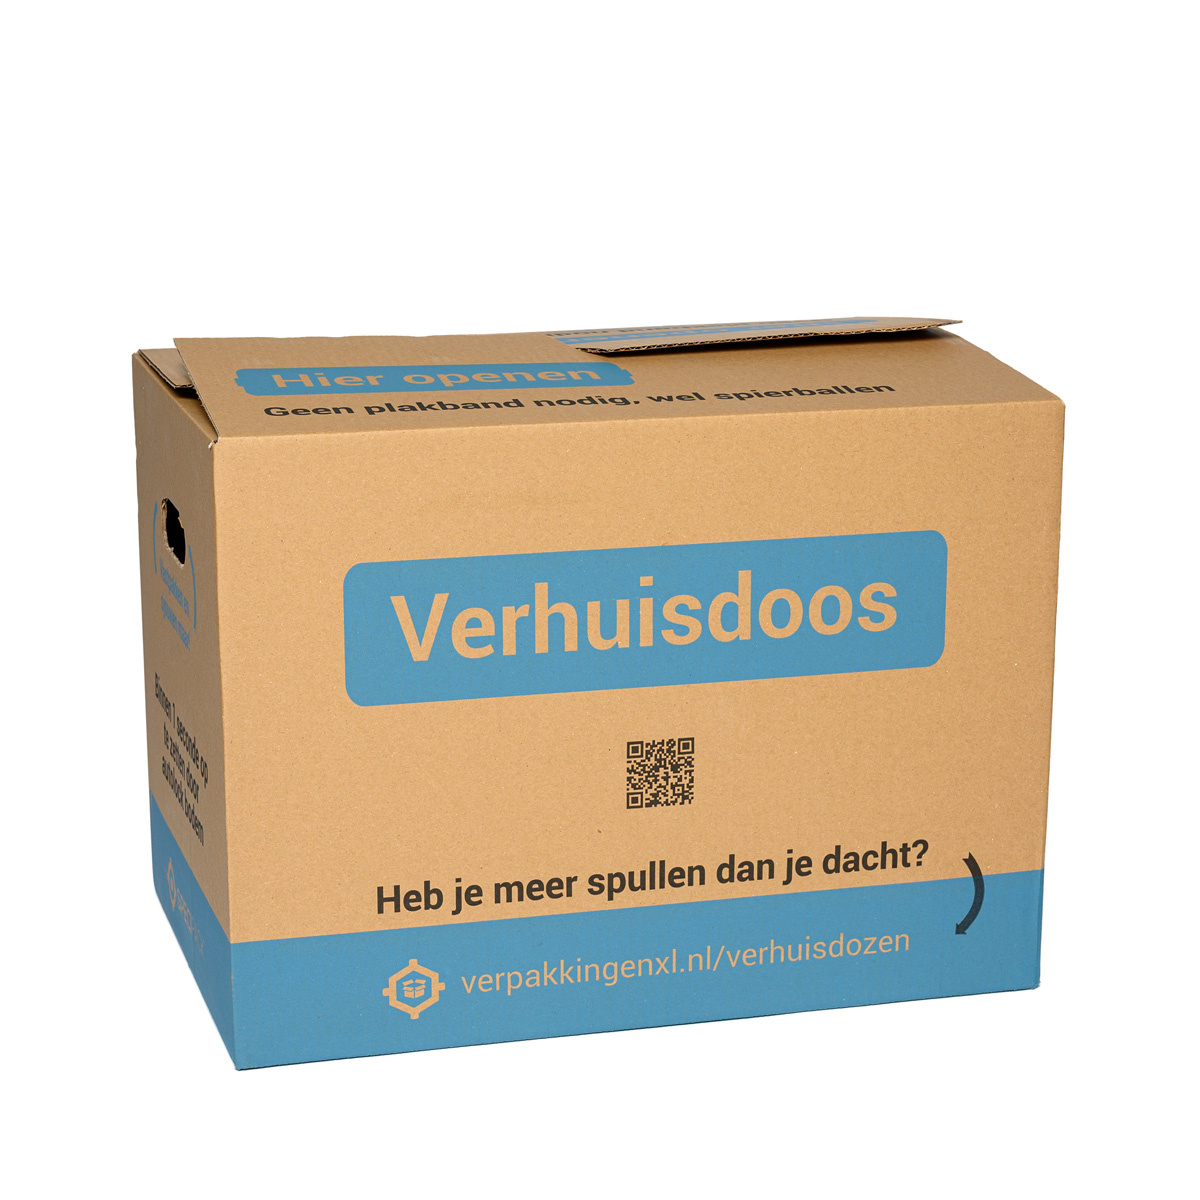 Bezem gevoeligheid wenselijk Verhuisdozen kopen? Bekijk online | VerpakkingenXL.nl - VerpakkingenXL